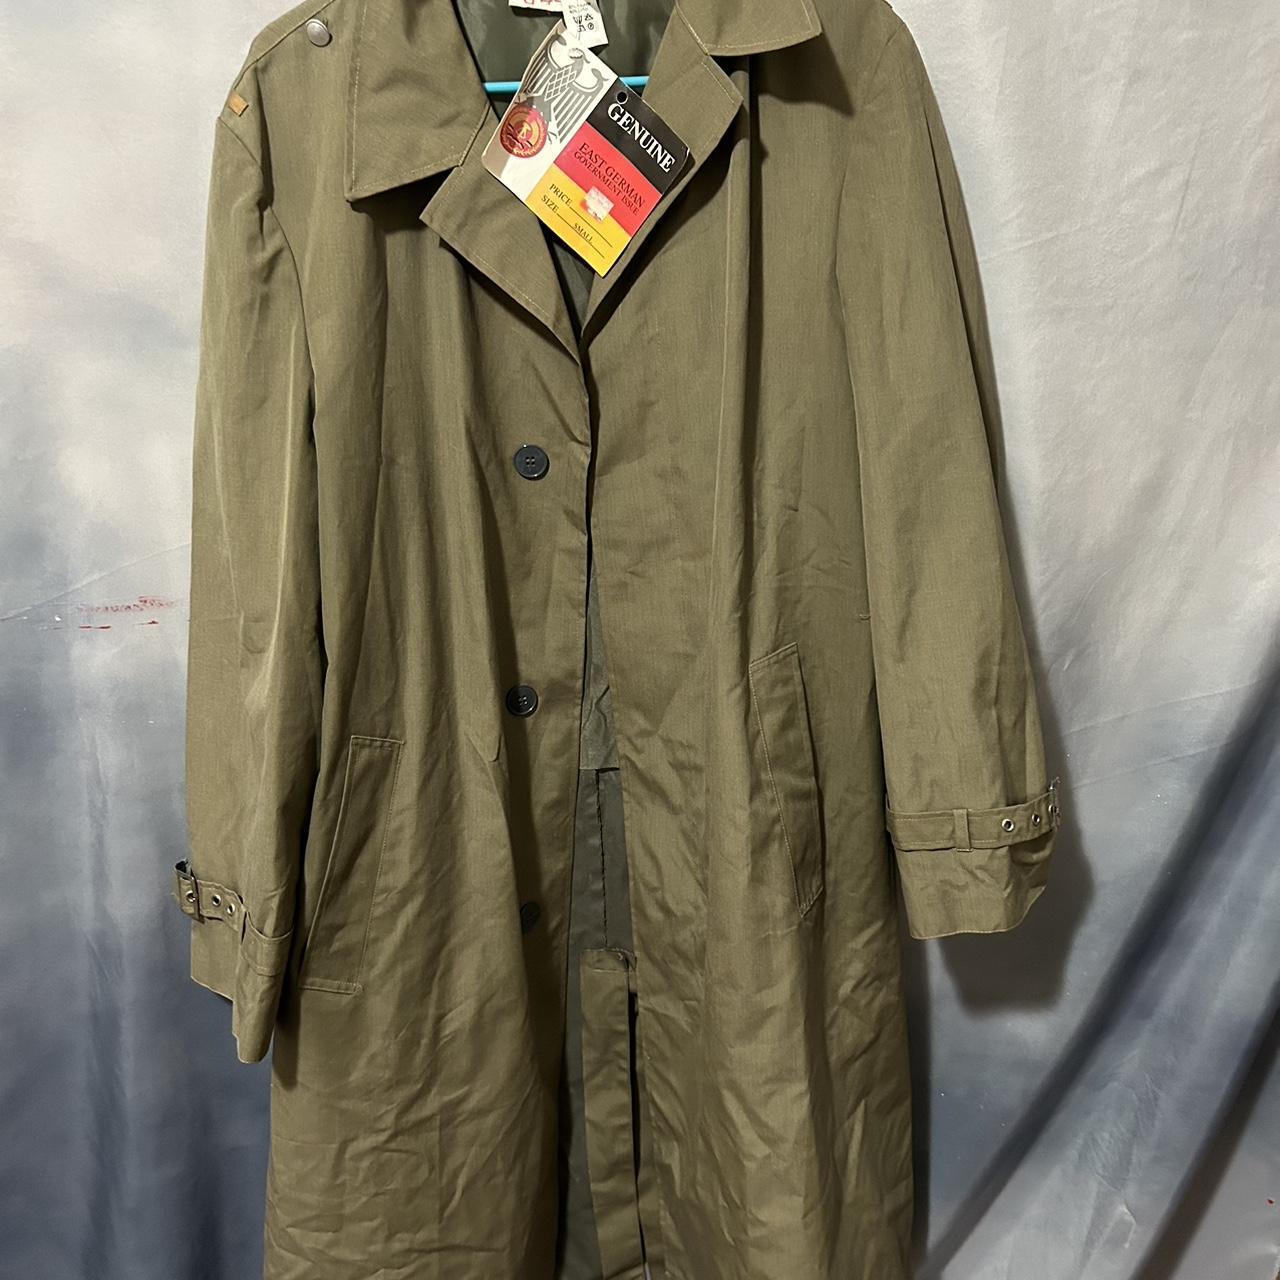 East German military jacket - Depop